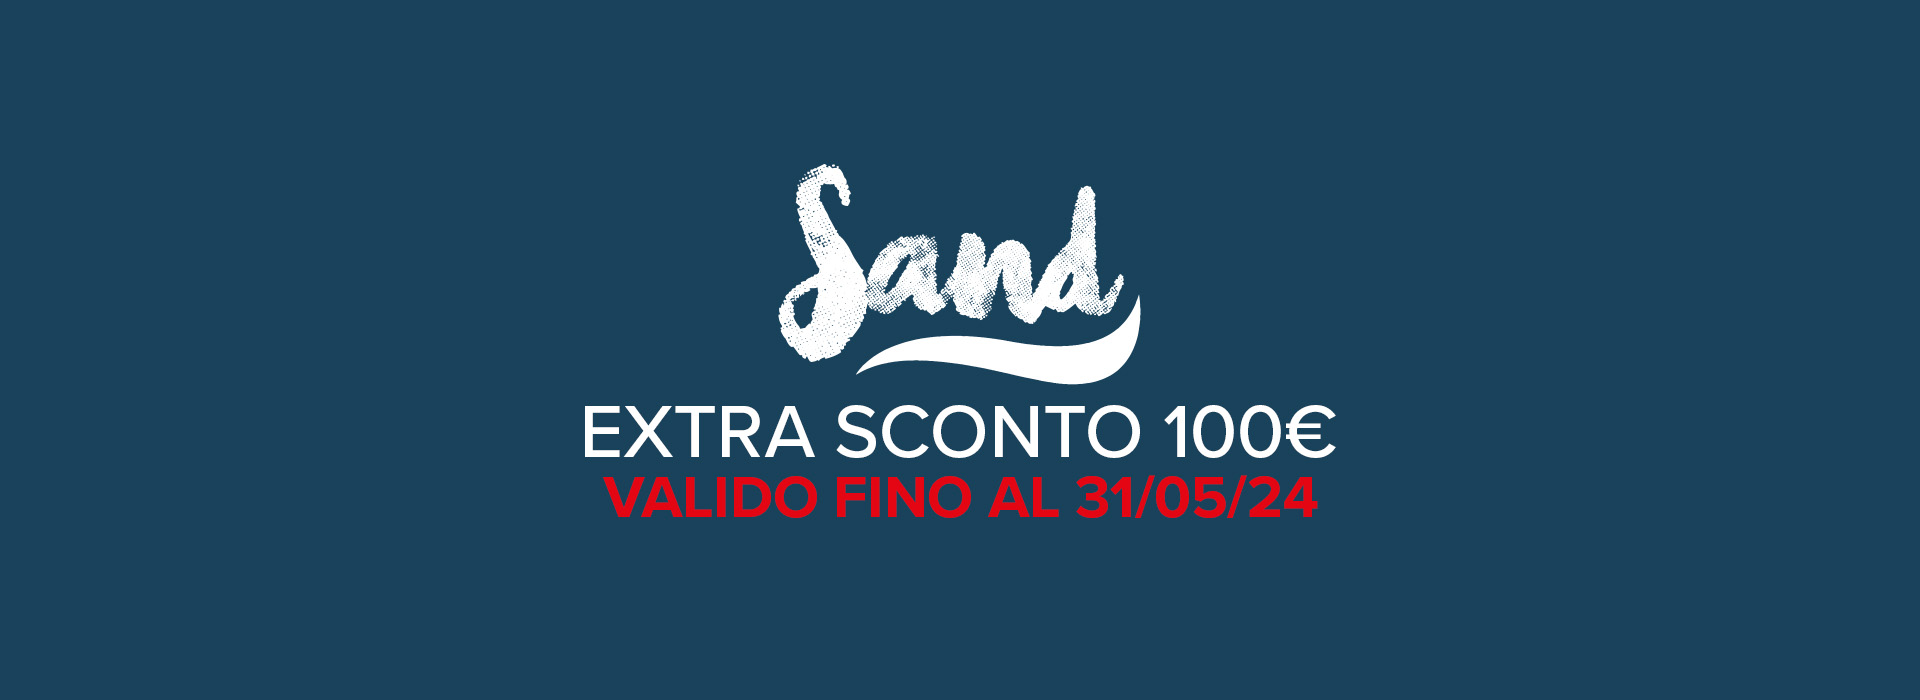 Promozione Sand: Extra sconto 100€